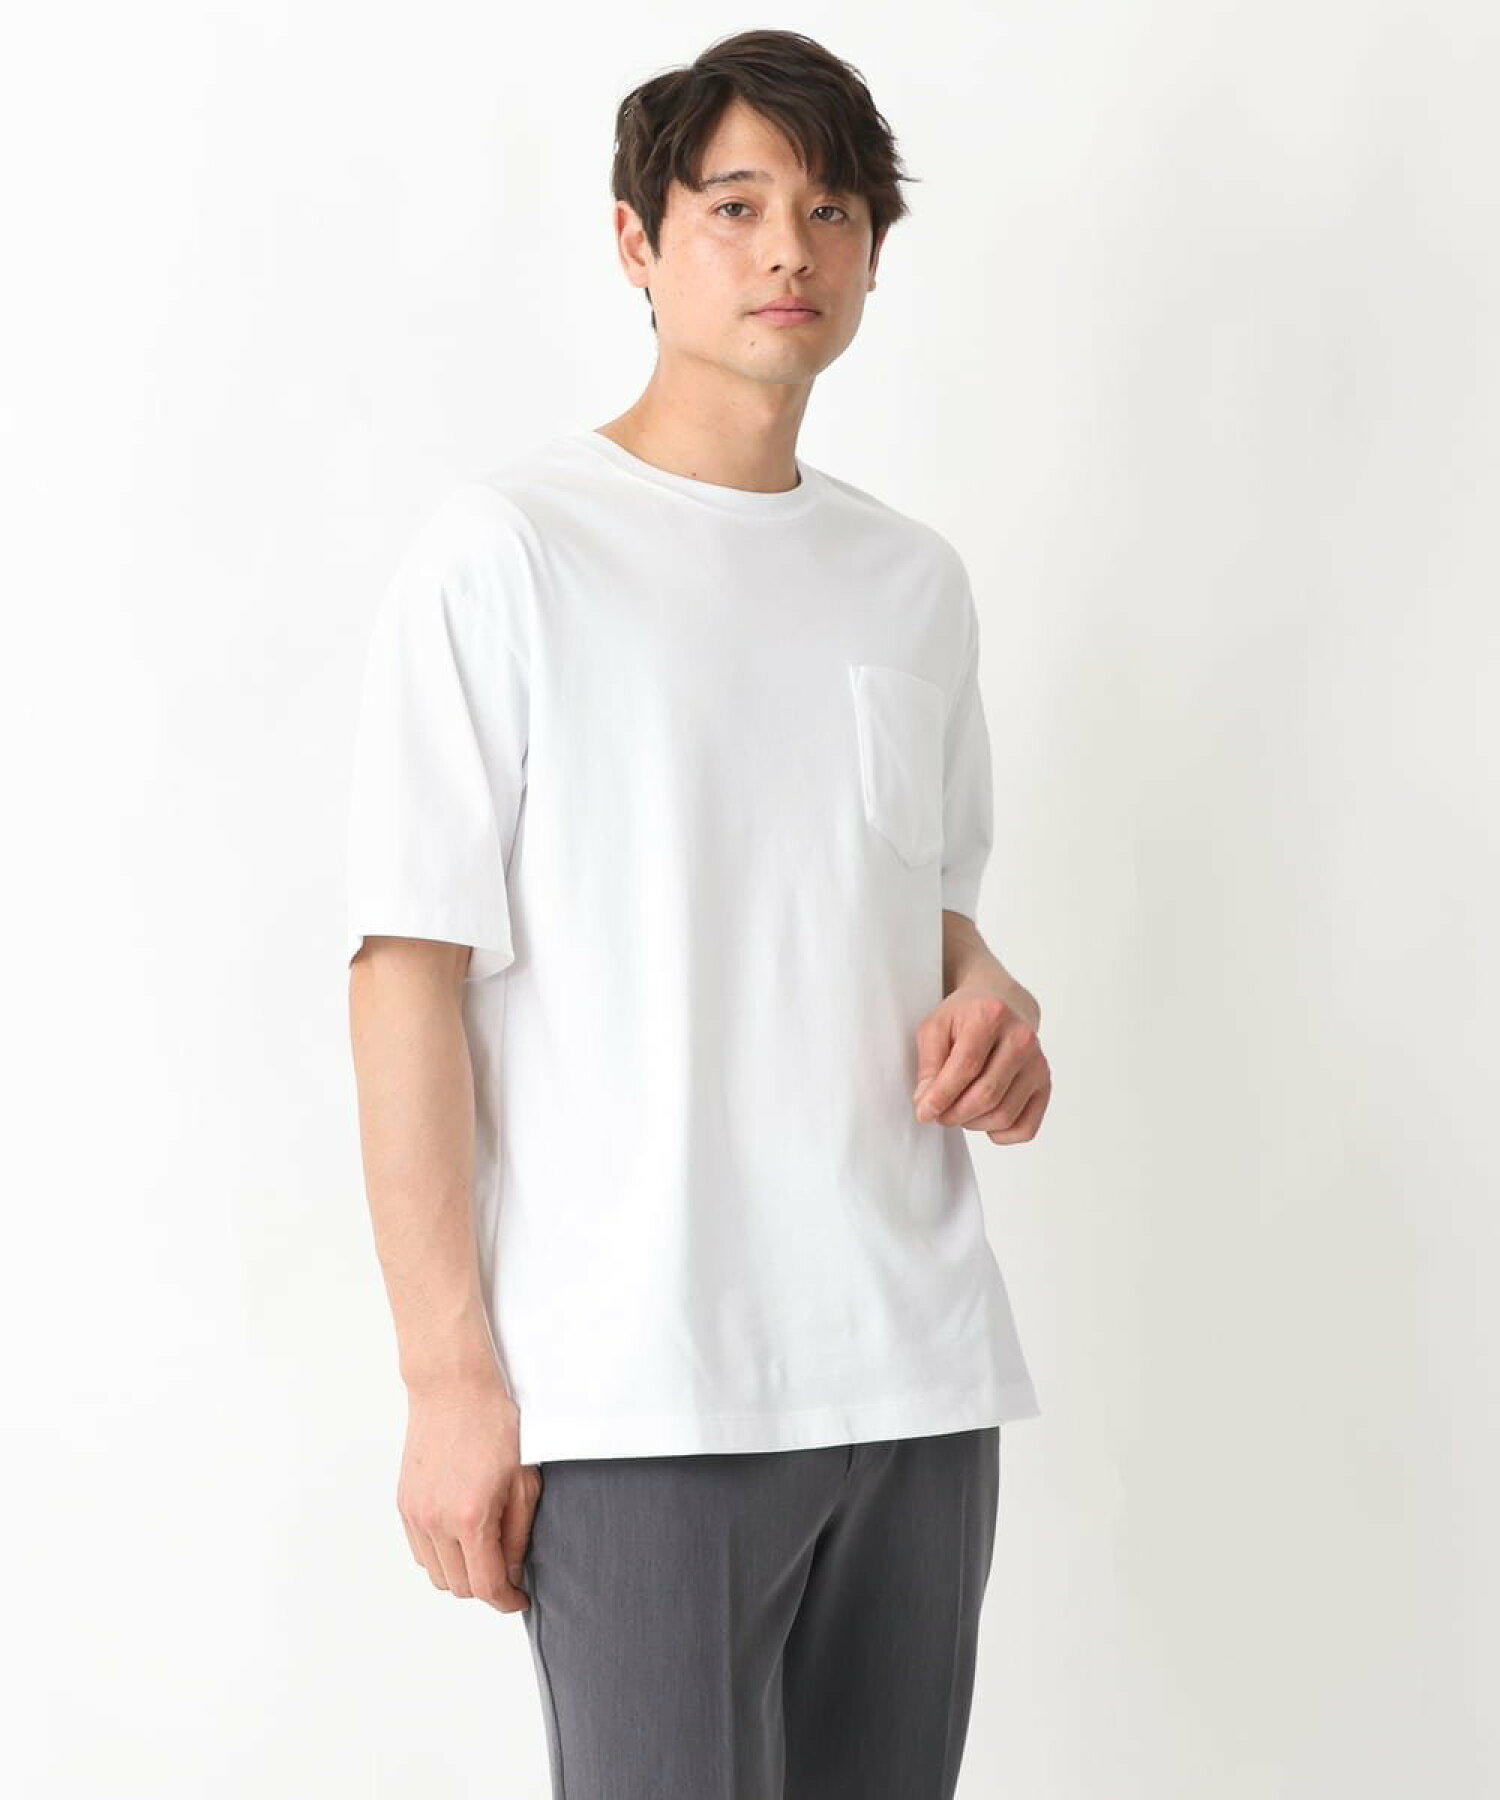 【累計2.2万枚販売/ユニセックス】シルケットスムースセミワイドTシャツ